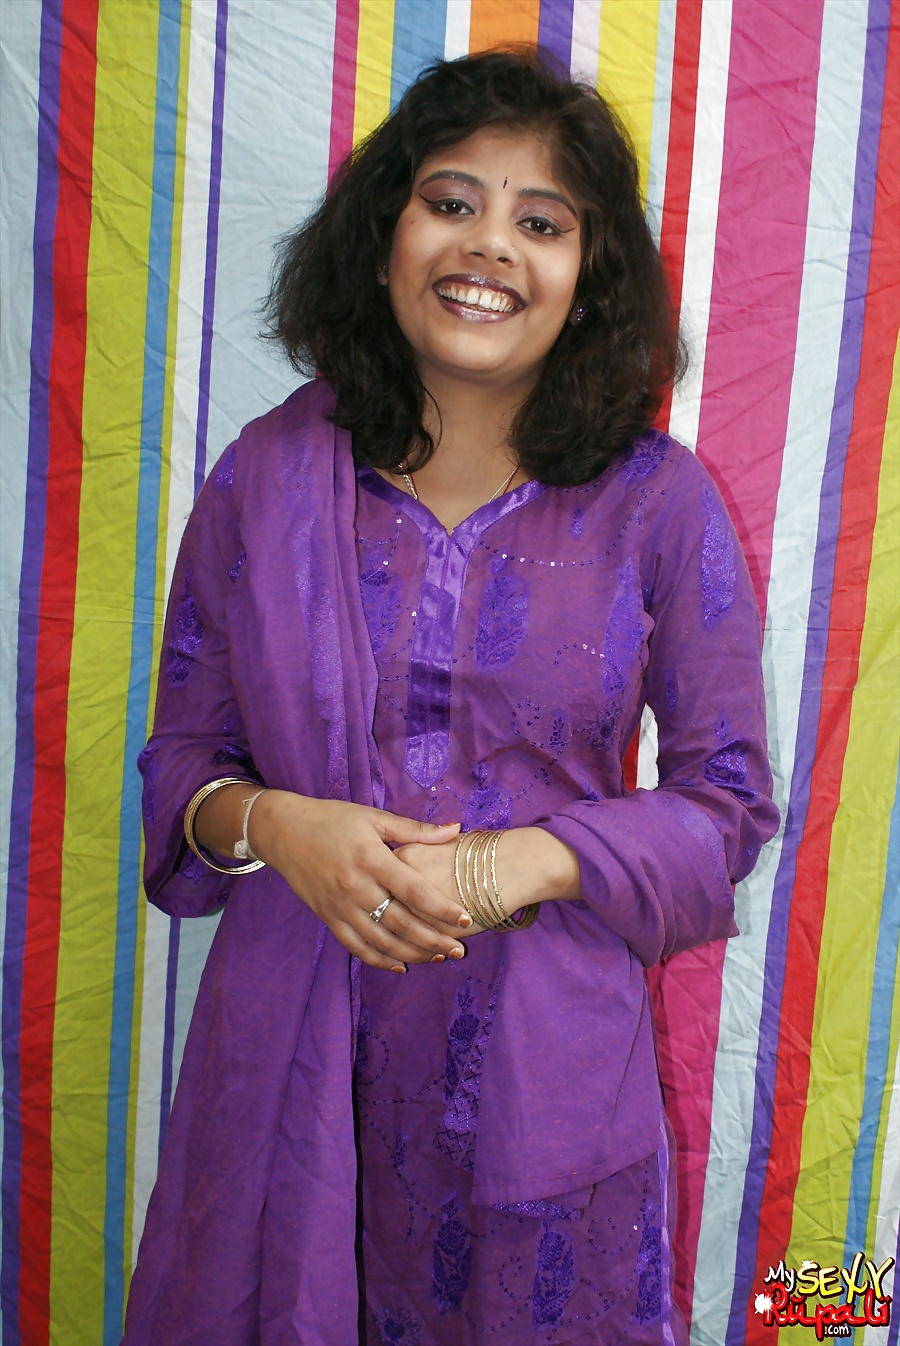 Sexy Indian Rupali Bhabhi - MySexyRupali.com #31000803